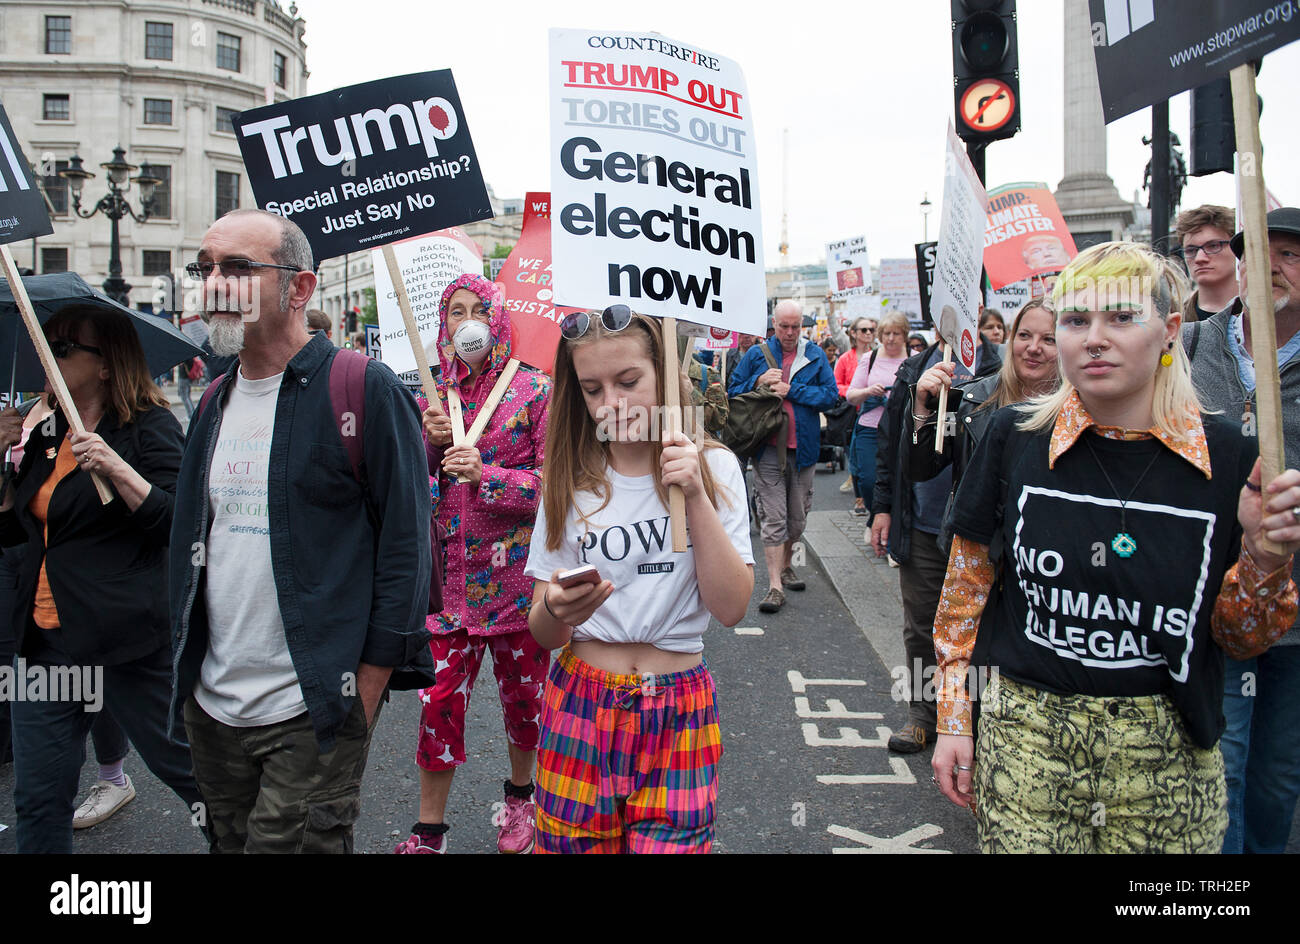 Arrestare Trump - Dimostrazione, Londra 2019 Foto Stock